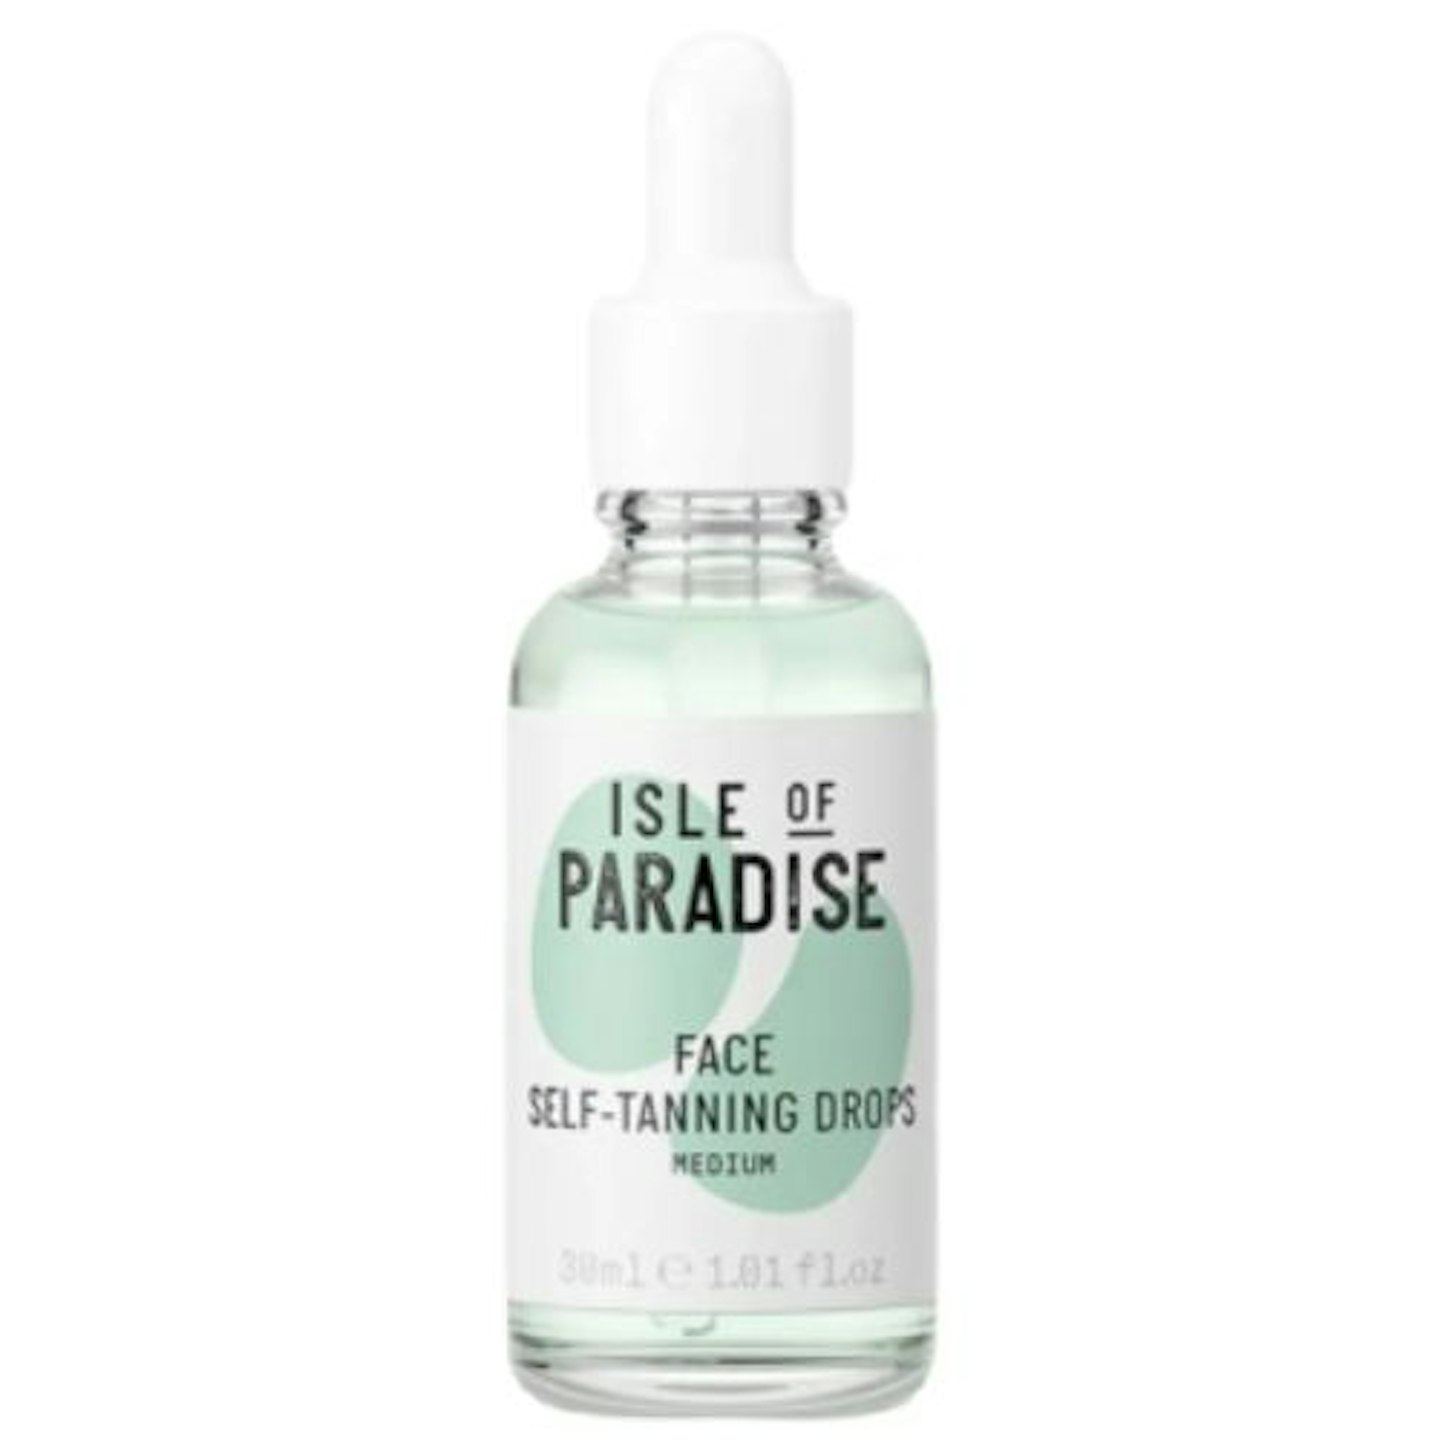 Isle of Paradise Self-Tanning Drops - Medium